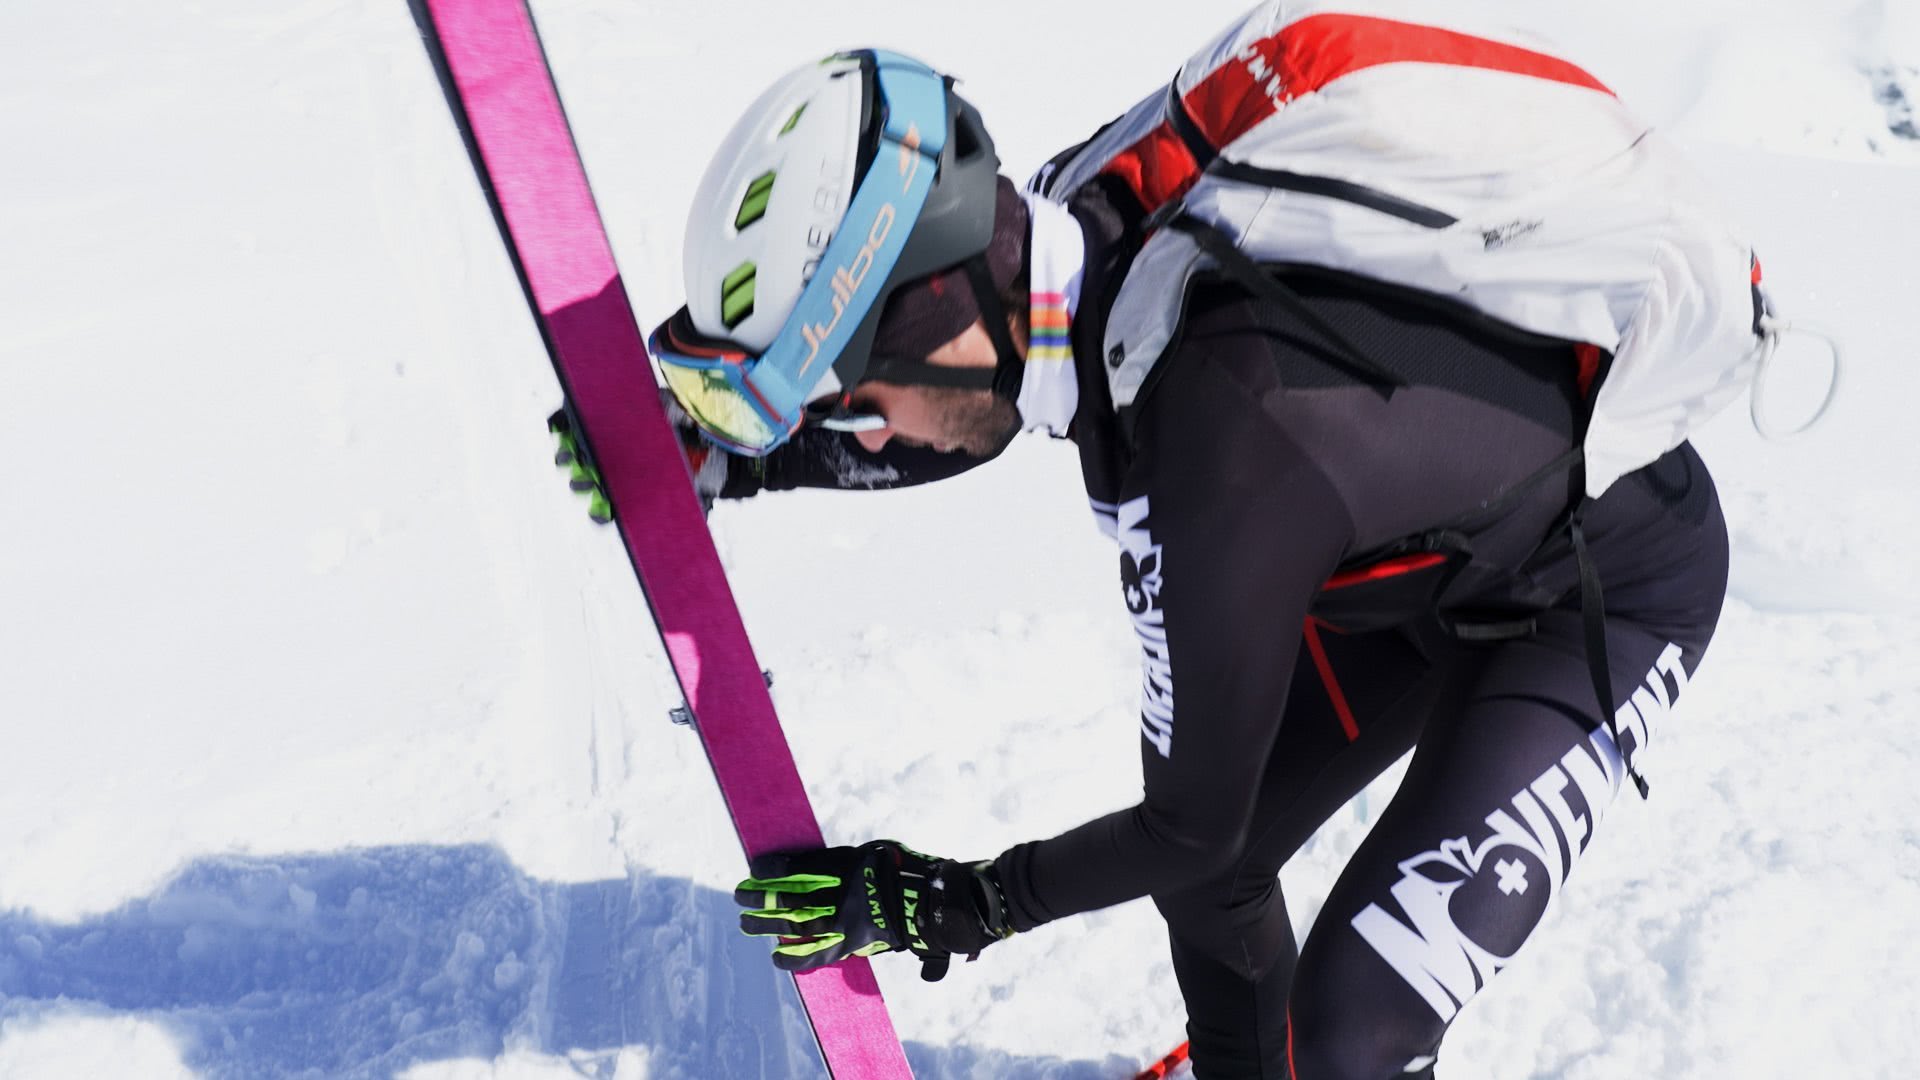 Photo: un skieur colle la peau sur un de ses skis.